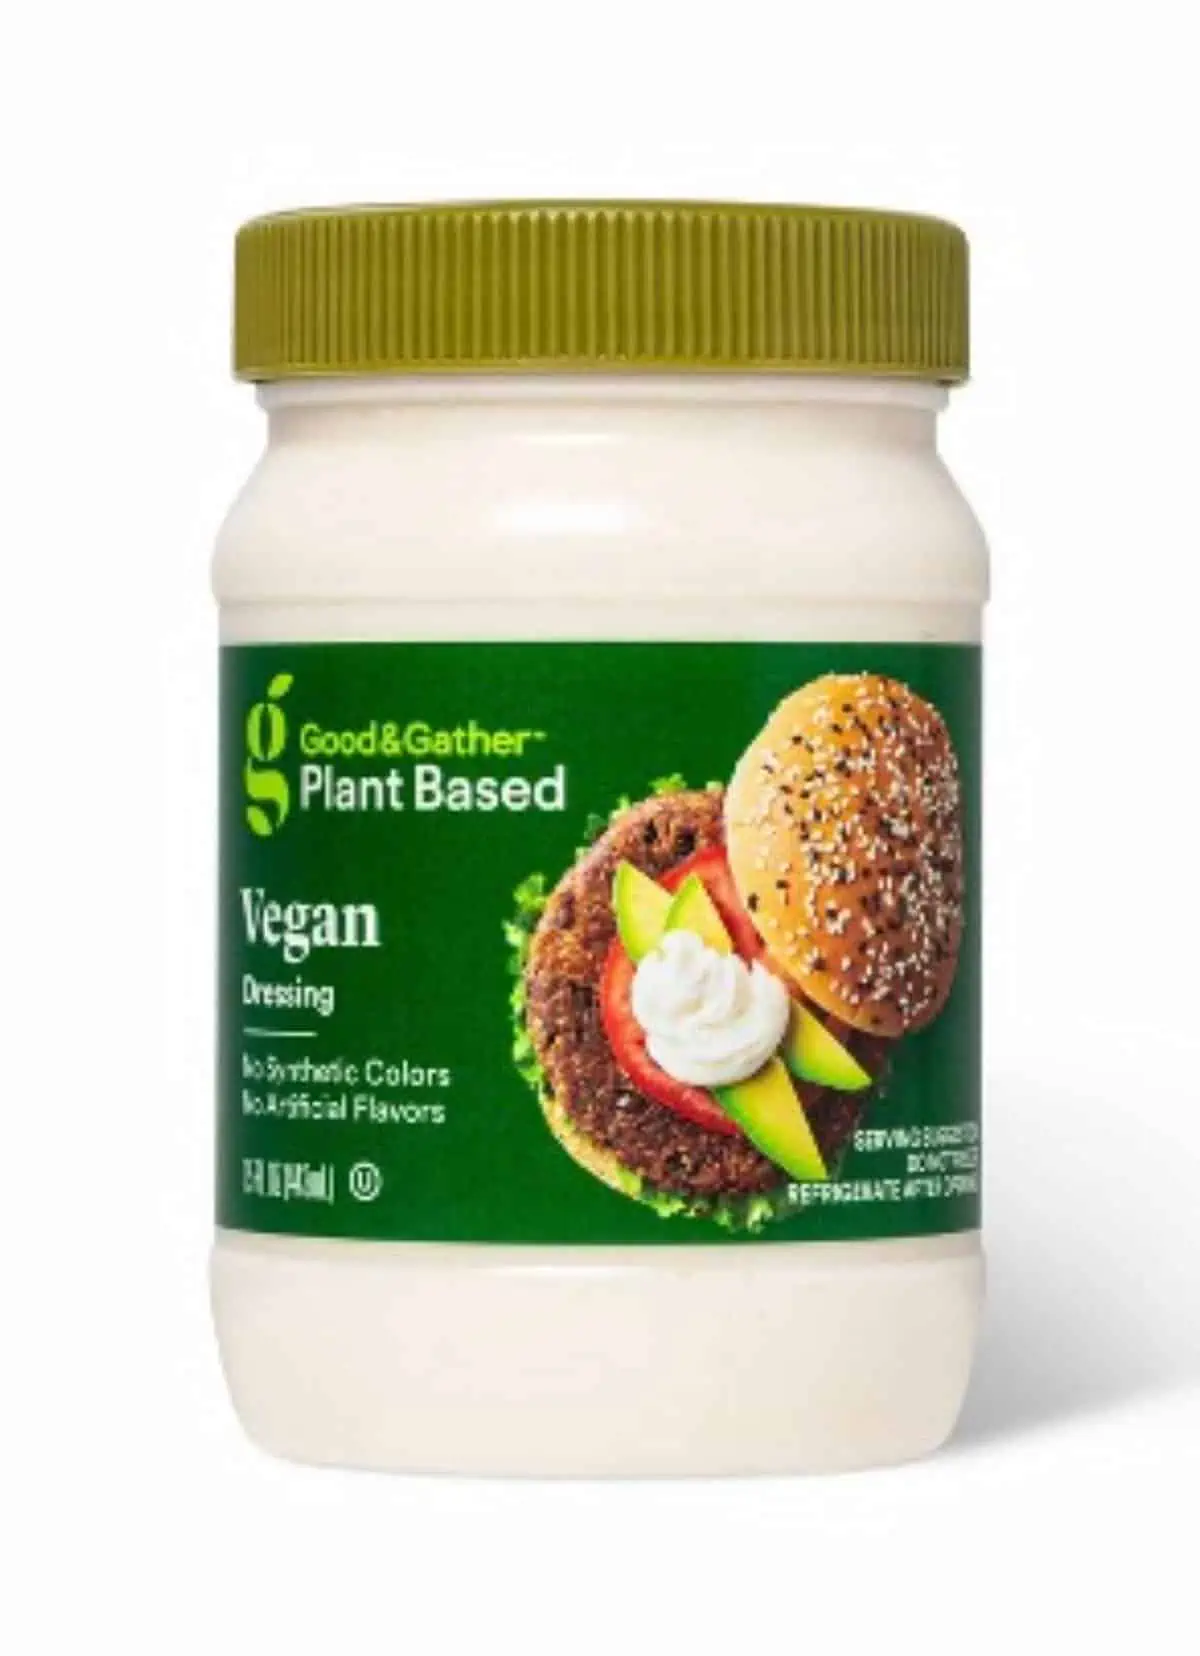 Target's Good & Gather brand vegan mayo.